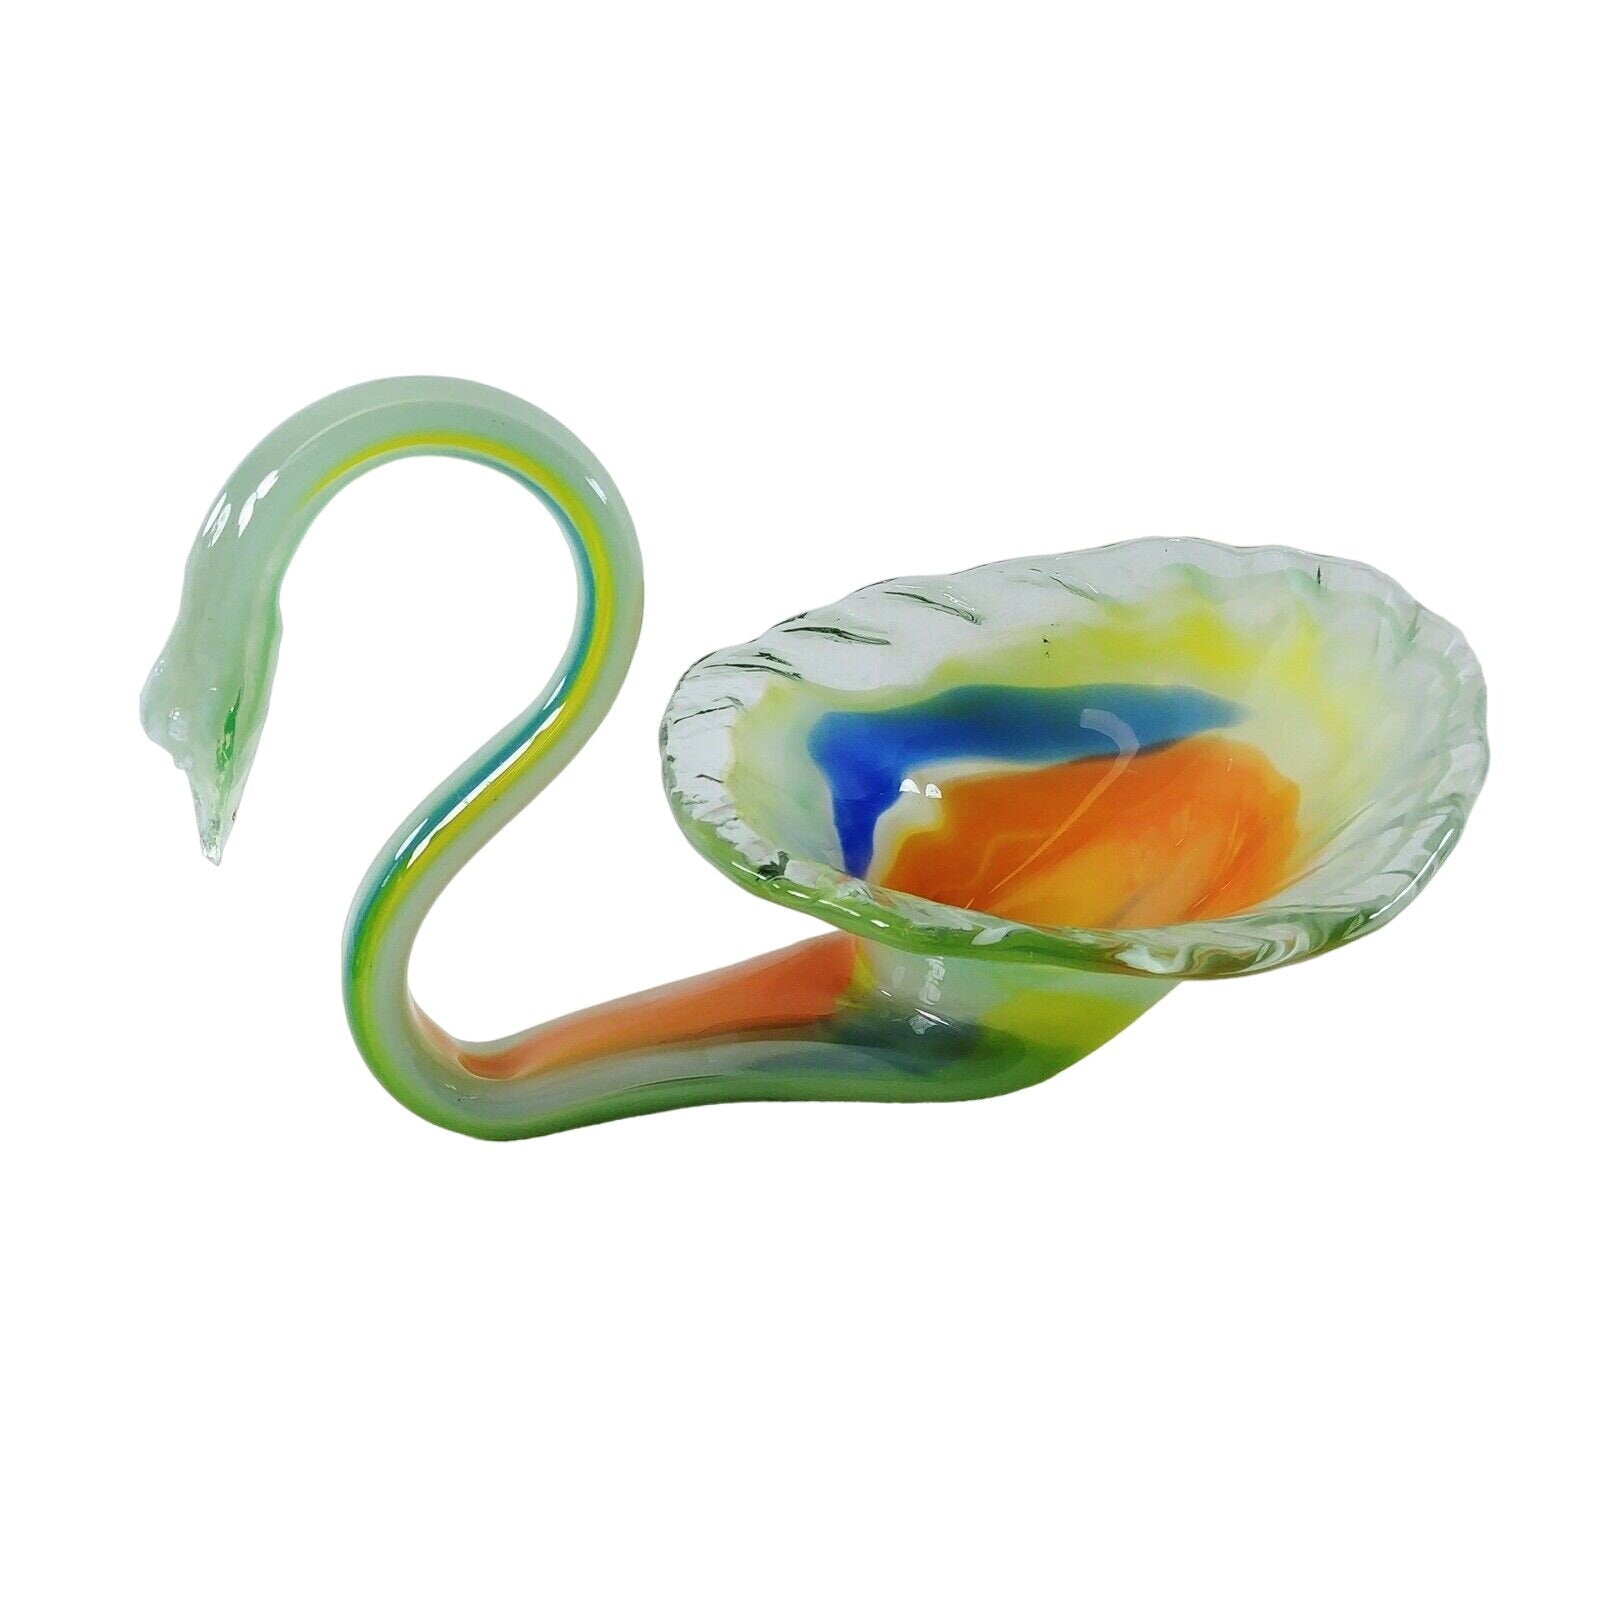 Art Glass Swan Hand Blown Bowl Floral Candy Dish Centerpiece Artisan Made